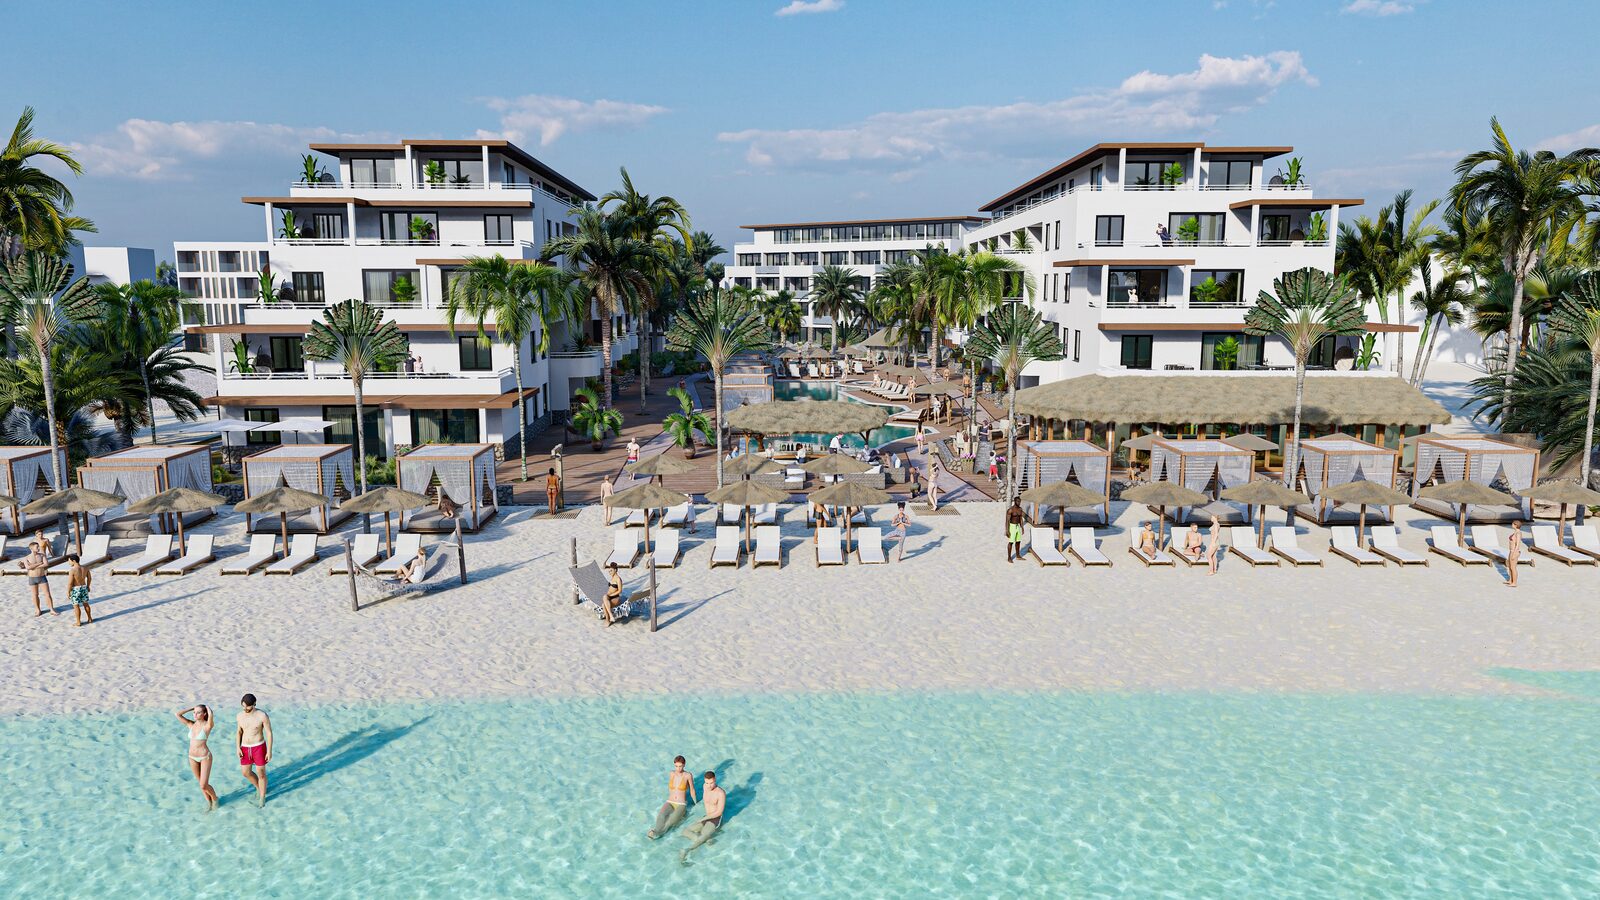 Bonaire Resorts